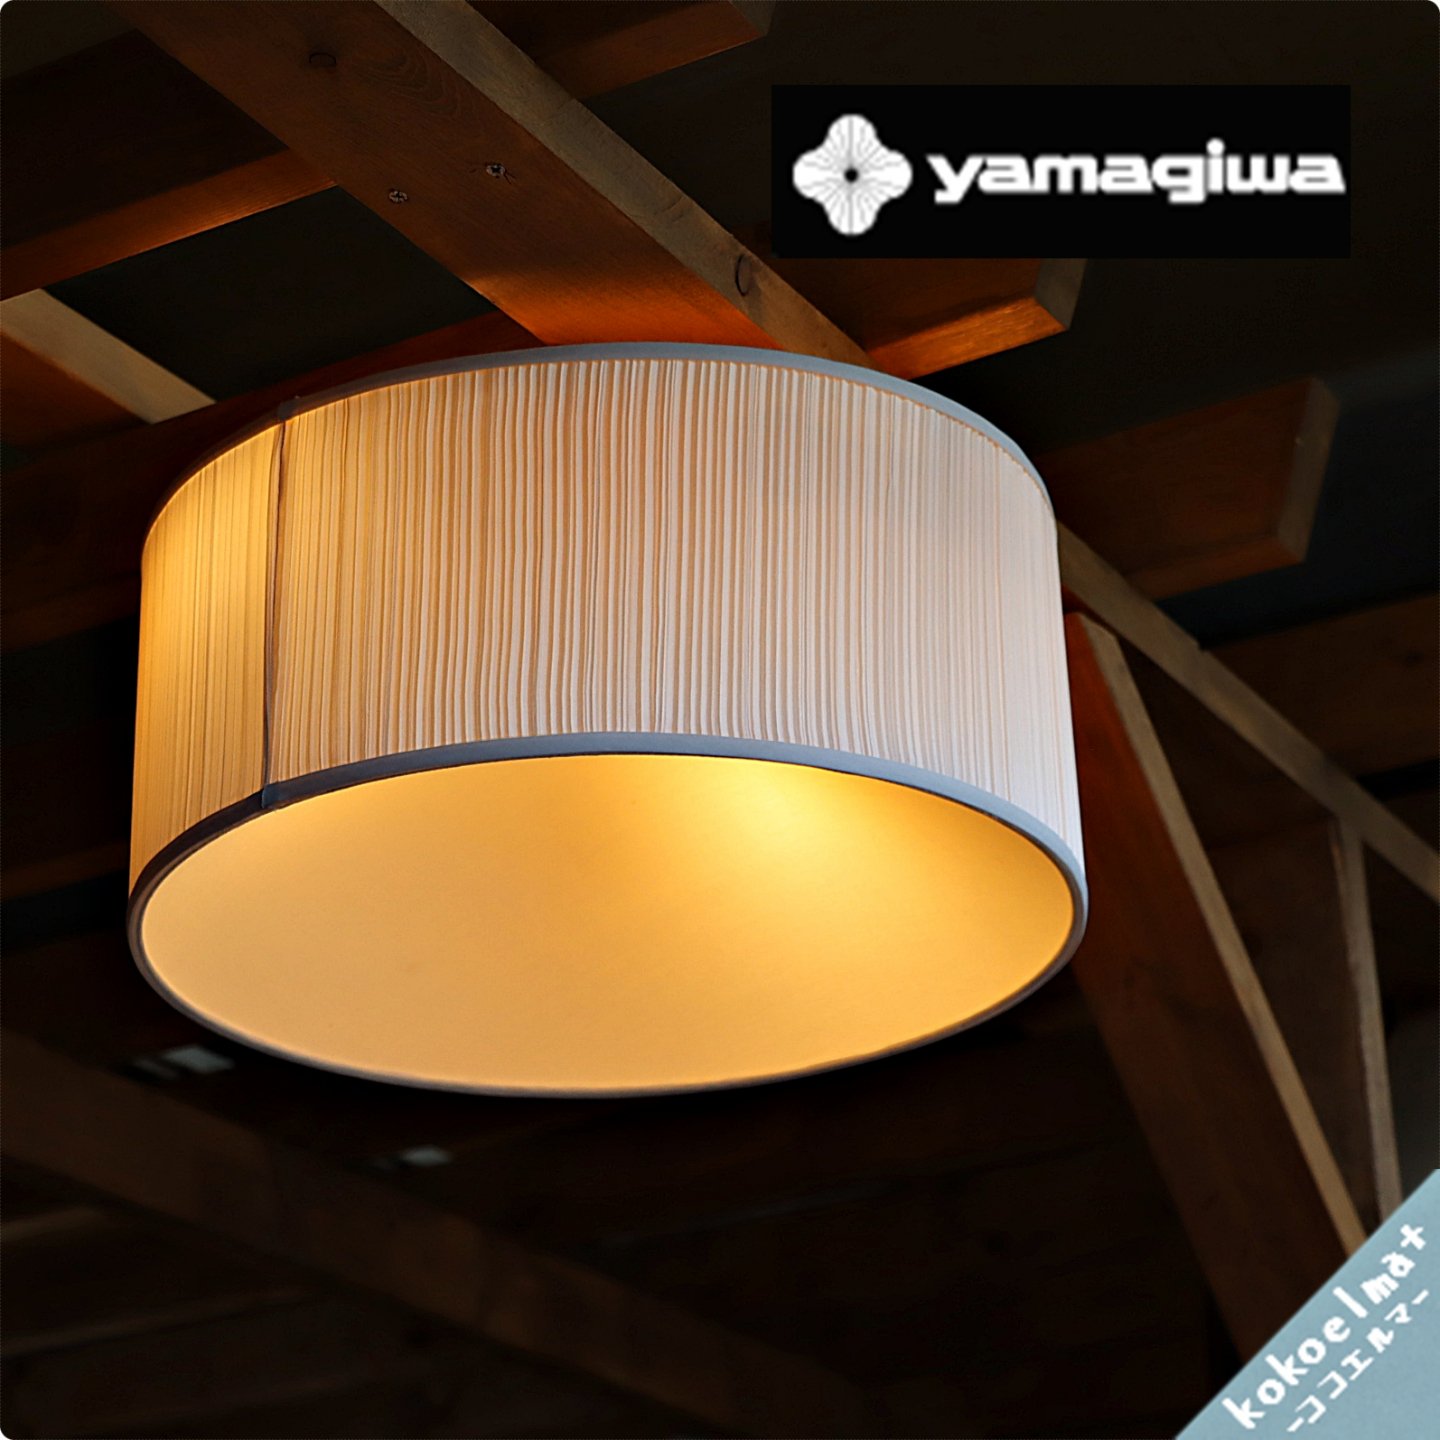 yamagiwa(ヤマギワ) BAUM(バウム) シーリングライト G1533Sです。ボリュームのあるスタイリッシュな天井照明 。北欧スタイルやモダンな空間に。リビングやダイニング、寝室などに。 - kokoelma -ココエルマ-  雑貨・中古家具・北欧家具・アンティーク家具の通販 インテリア ...